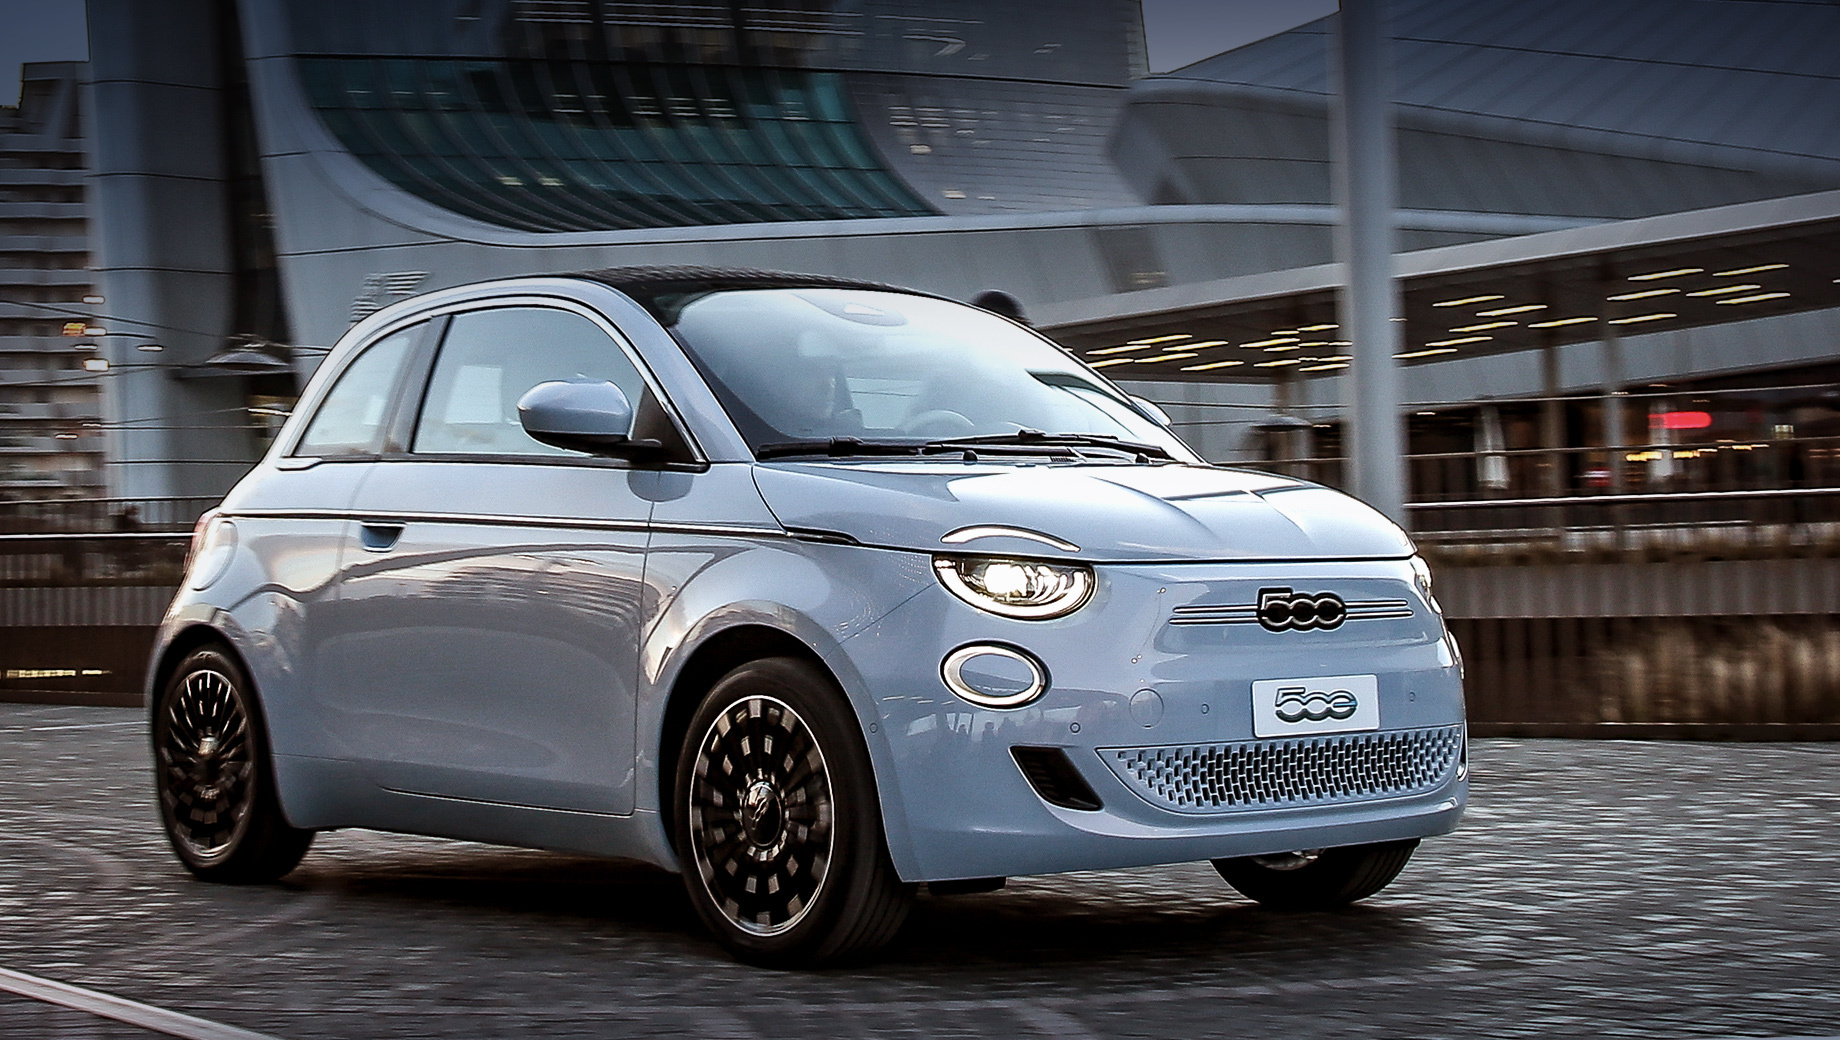 Fiat объявил, что удалит неэлектрифицированные варианты из своей линейки в Великобритании, и каждый автомобиль, который он продает в Великобритании, будет электрифицирован с июля.